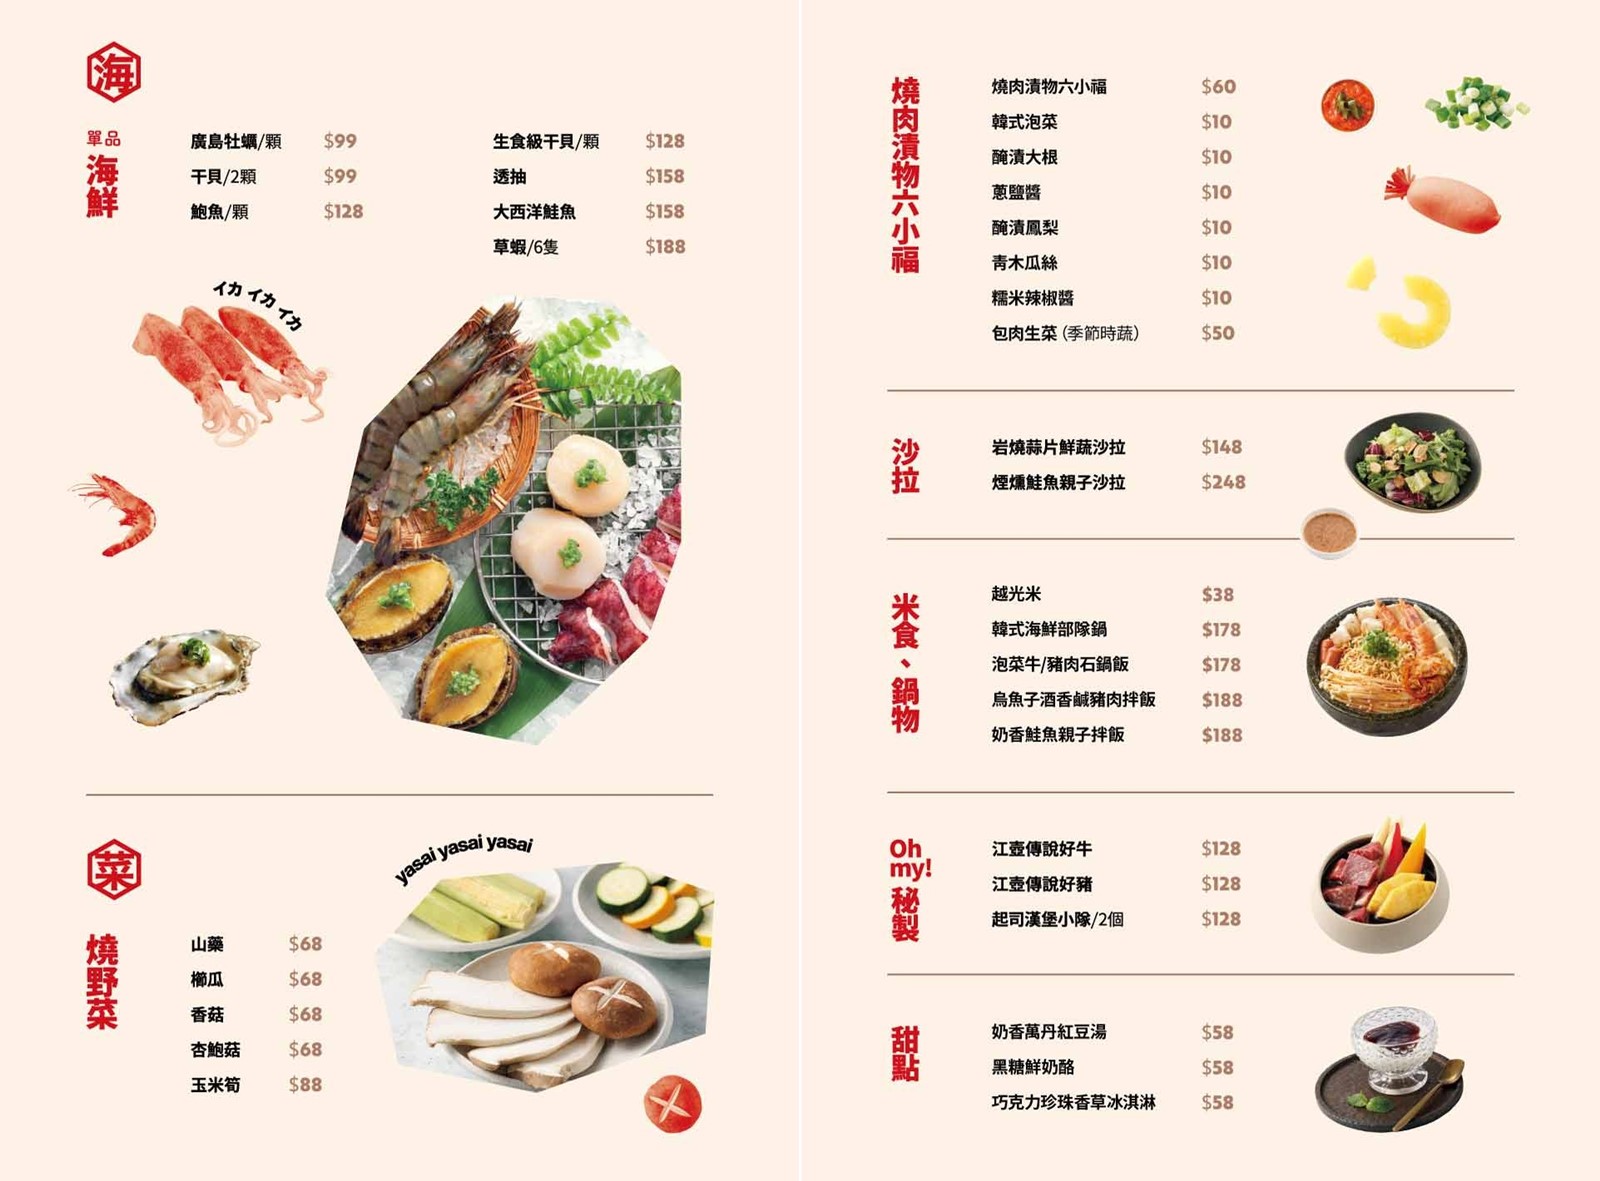 日式燒肉創意吃法更多變化，重點是餐點好吃肉質都很讚！ Oh my!原燒菜單 @巧莉的世界流浪筆記